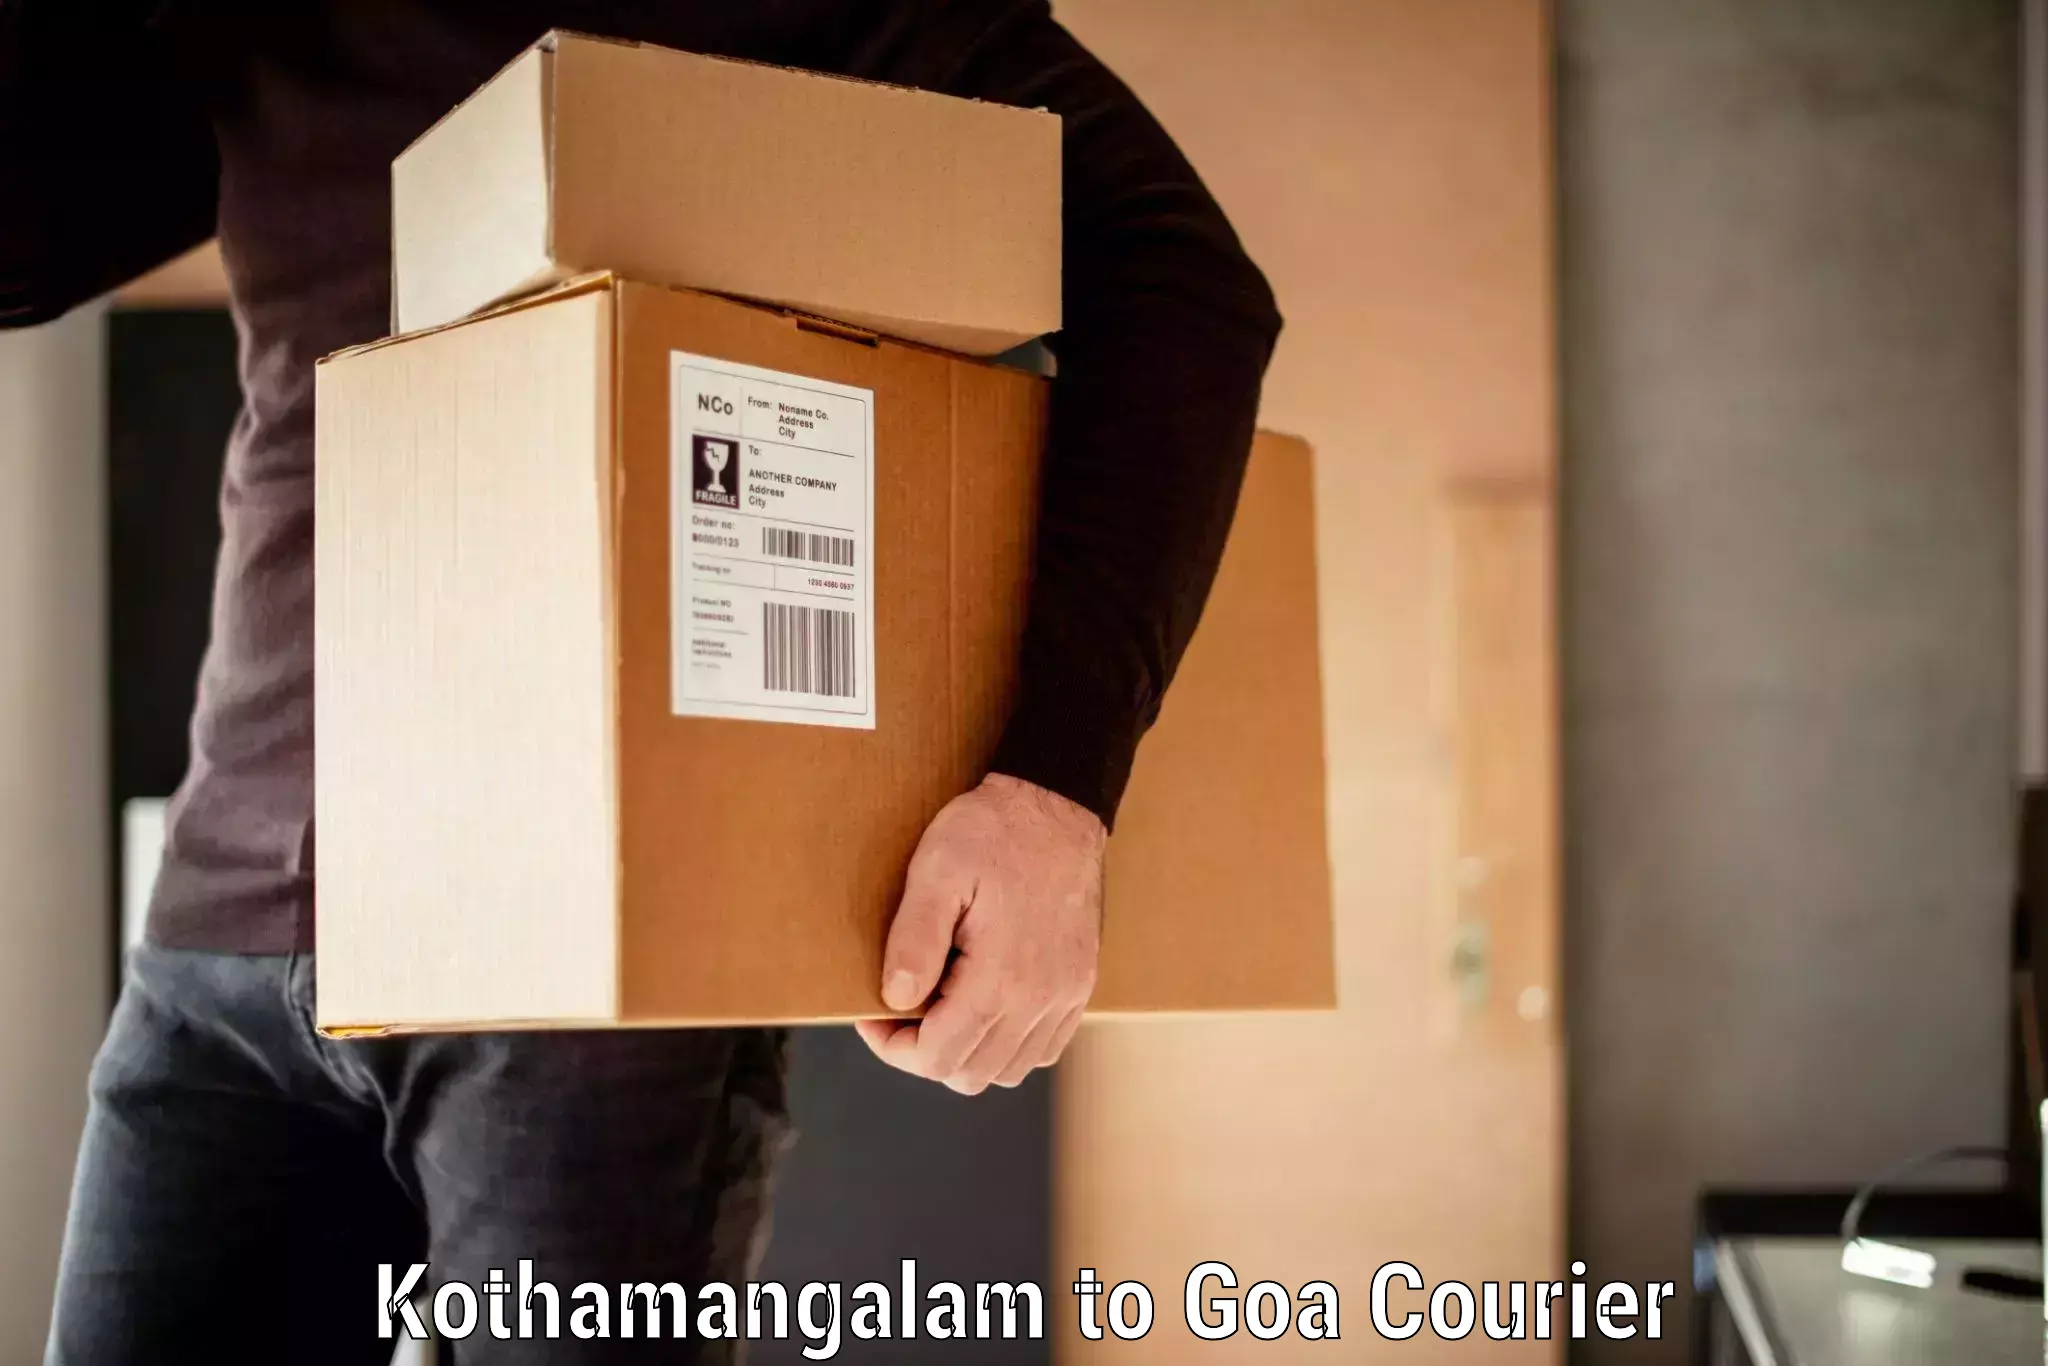 Baggage transport management Kothamangalam to Goa